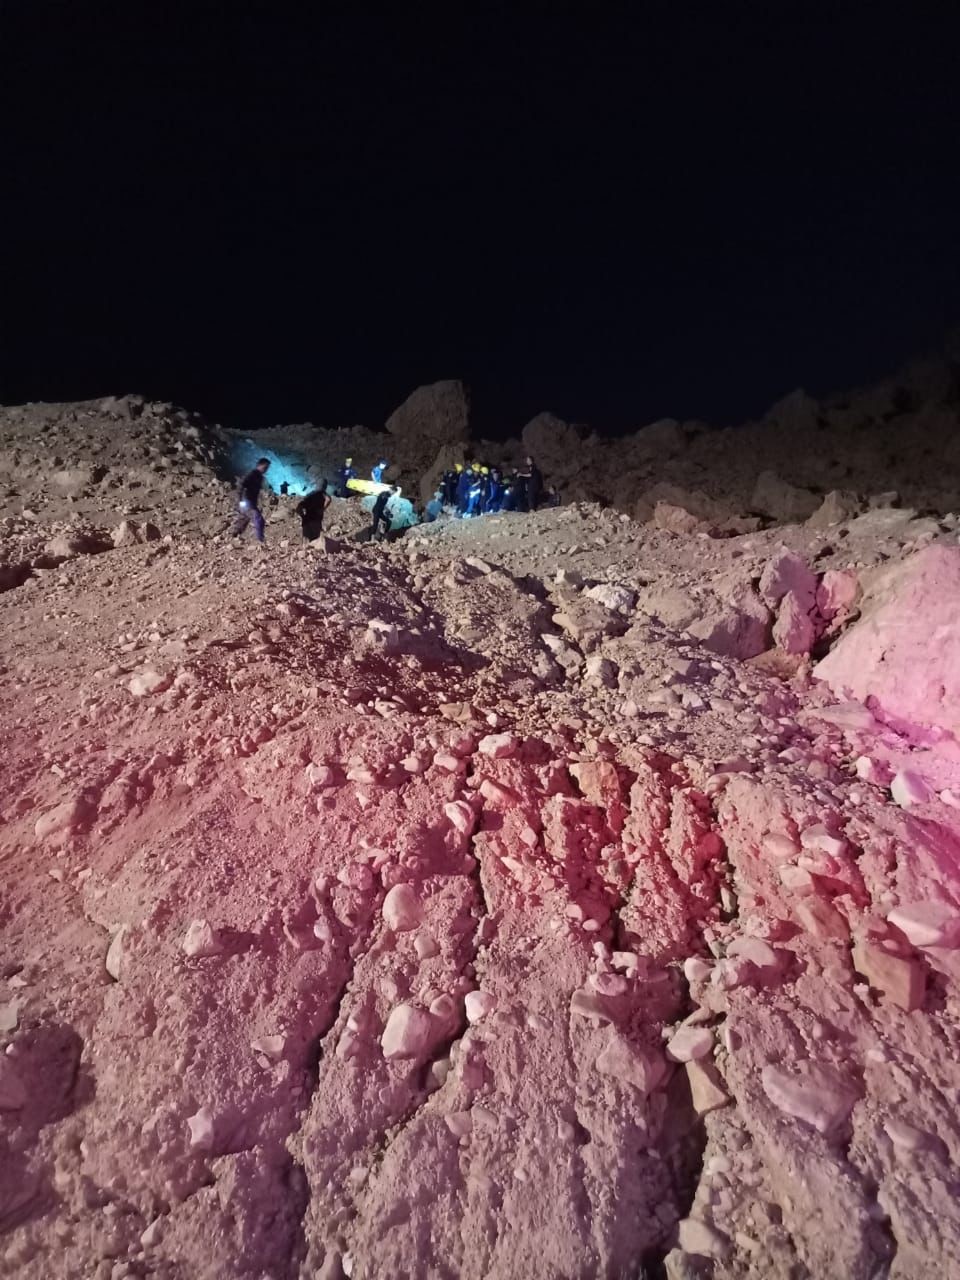 إنقاذ فتاة سقطت عن مقطع صخري في البحر الميت